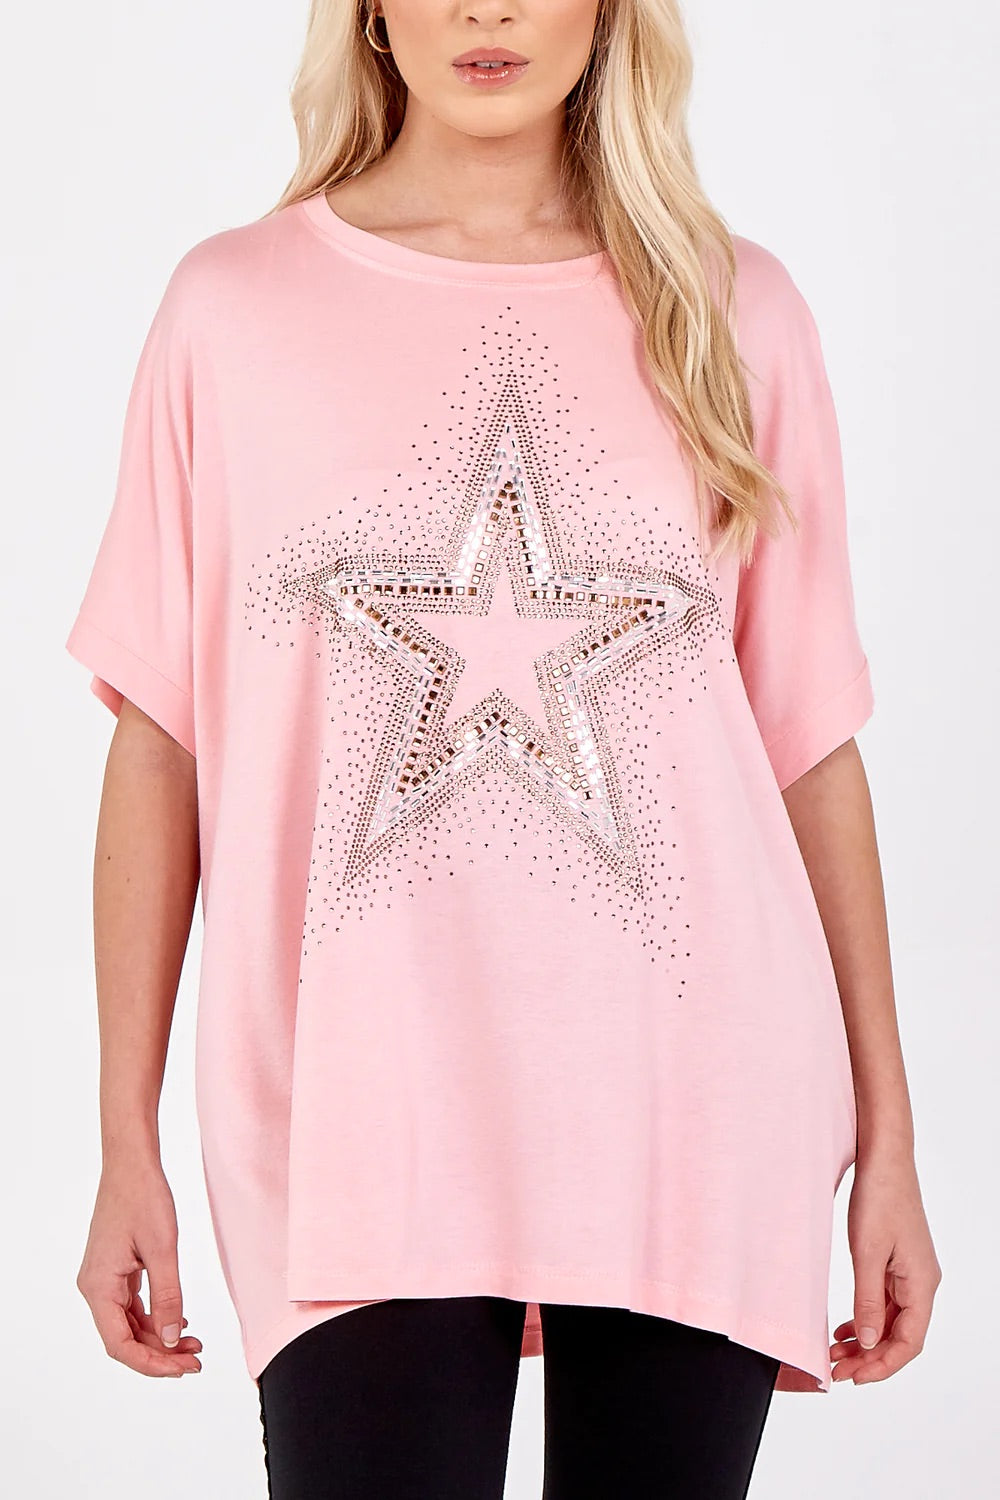 Rachel Star T-Shirt